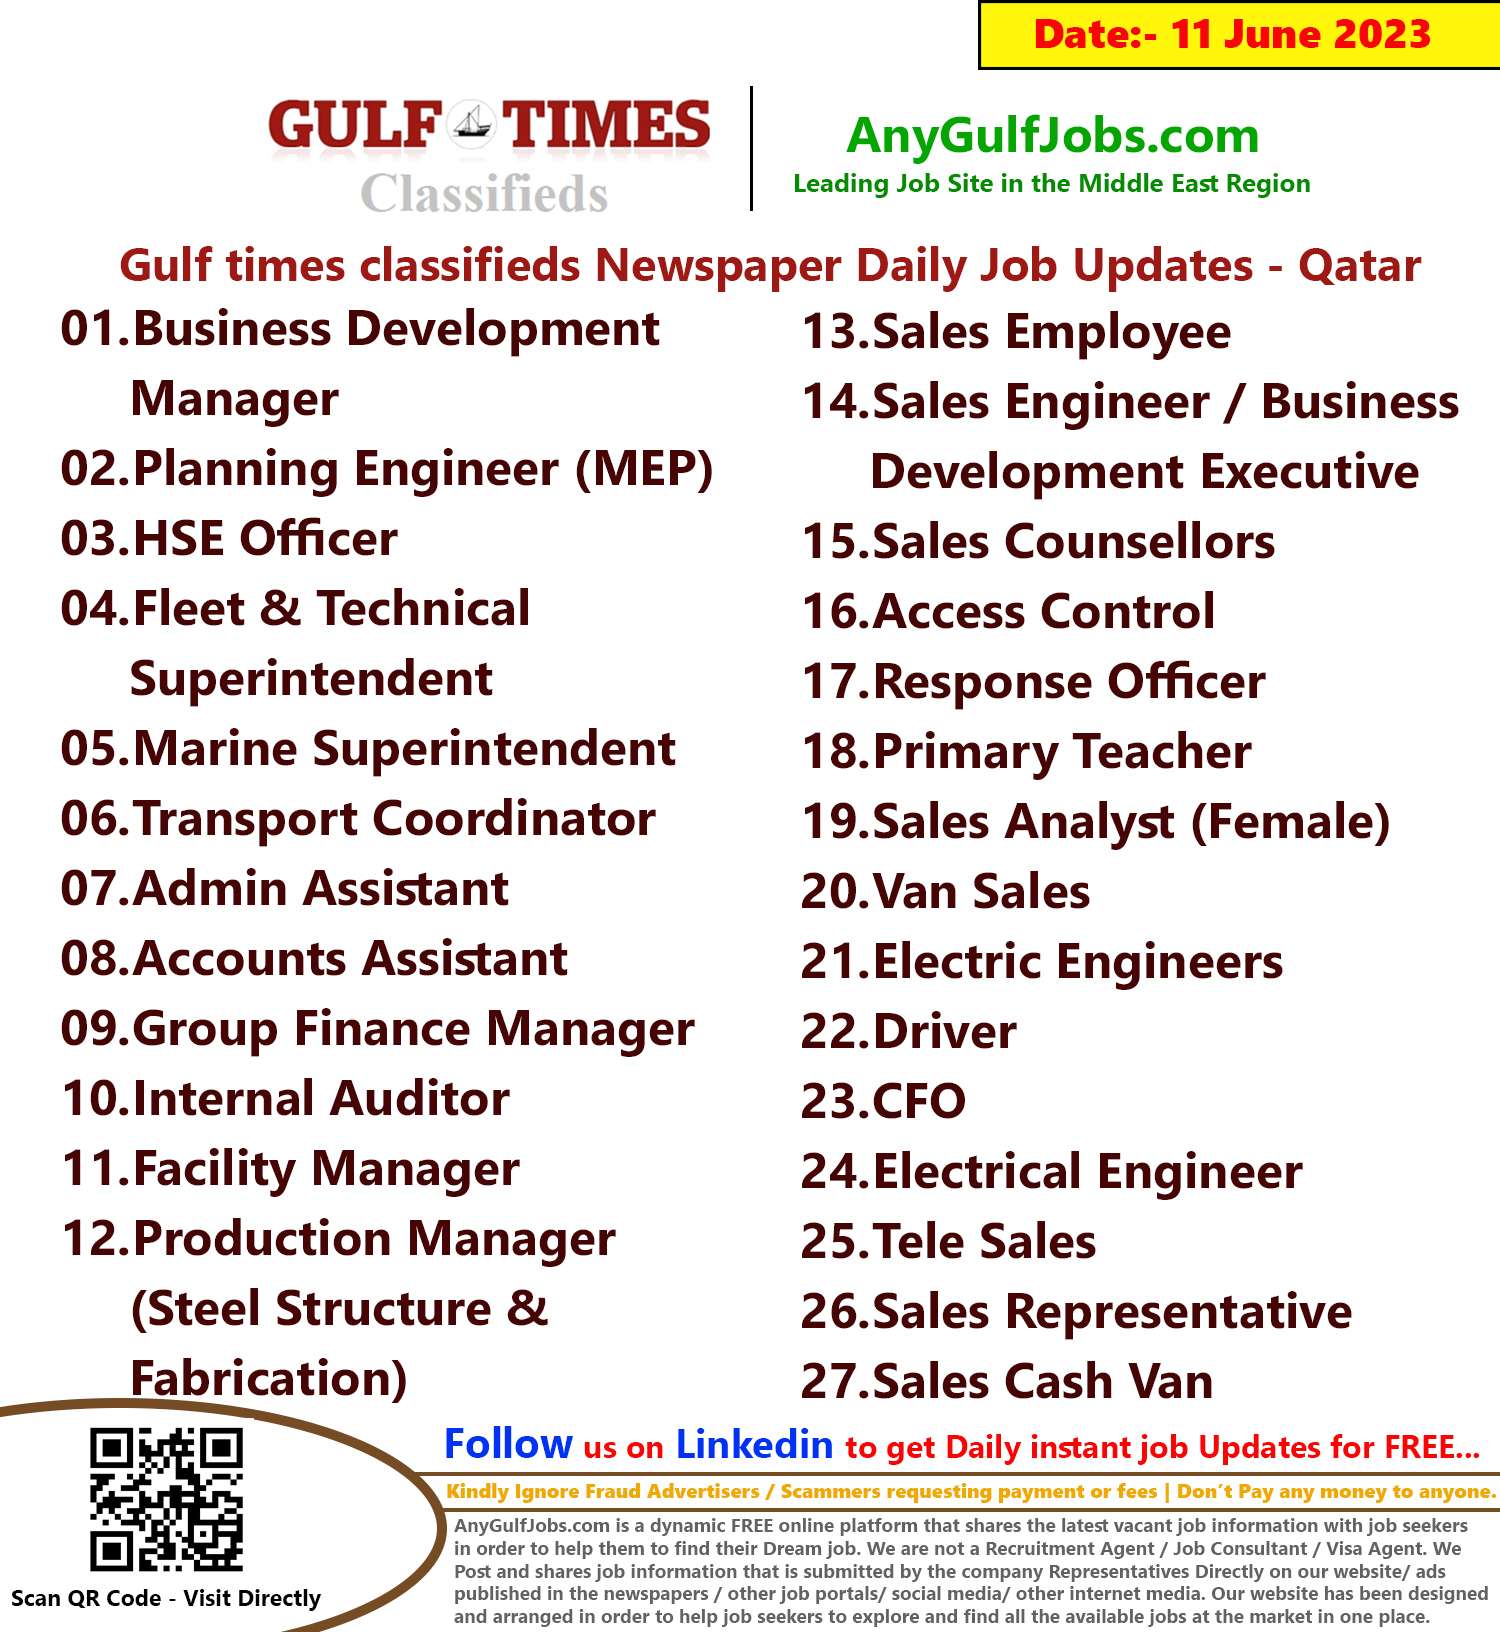 Gulf times classifieds Job Vacancies Qatar - 11 June 2023